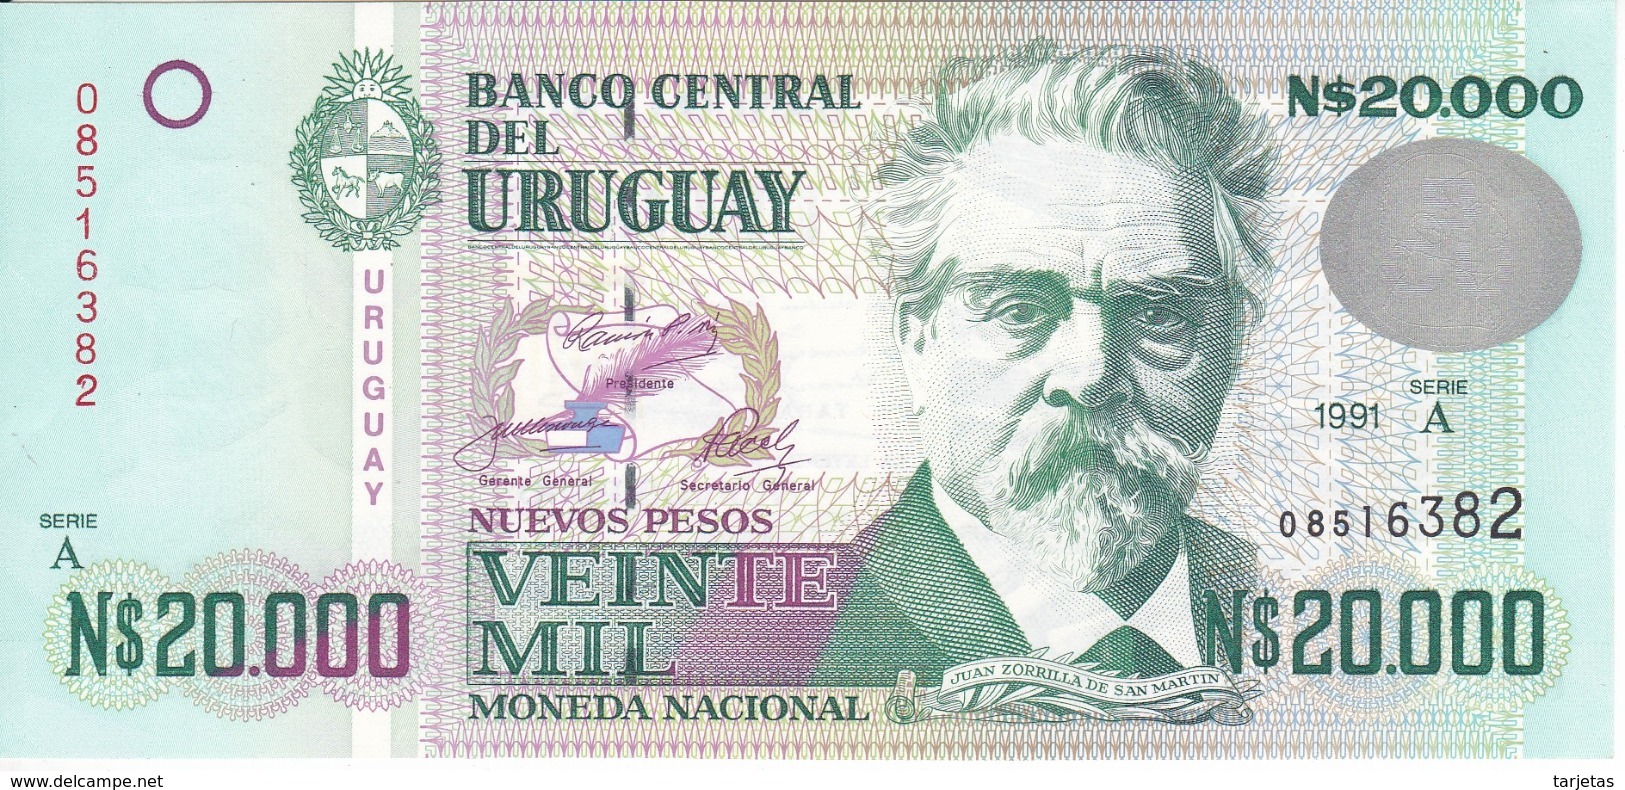 BILLETE DE URUGUAY DE 20000 PESOS DEL AÑO 1991 EN CALIDAD EBC (XF) (BANKNOTE) - Uruguay